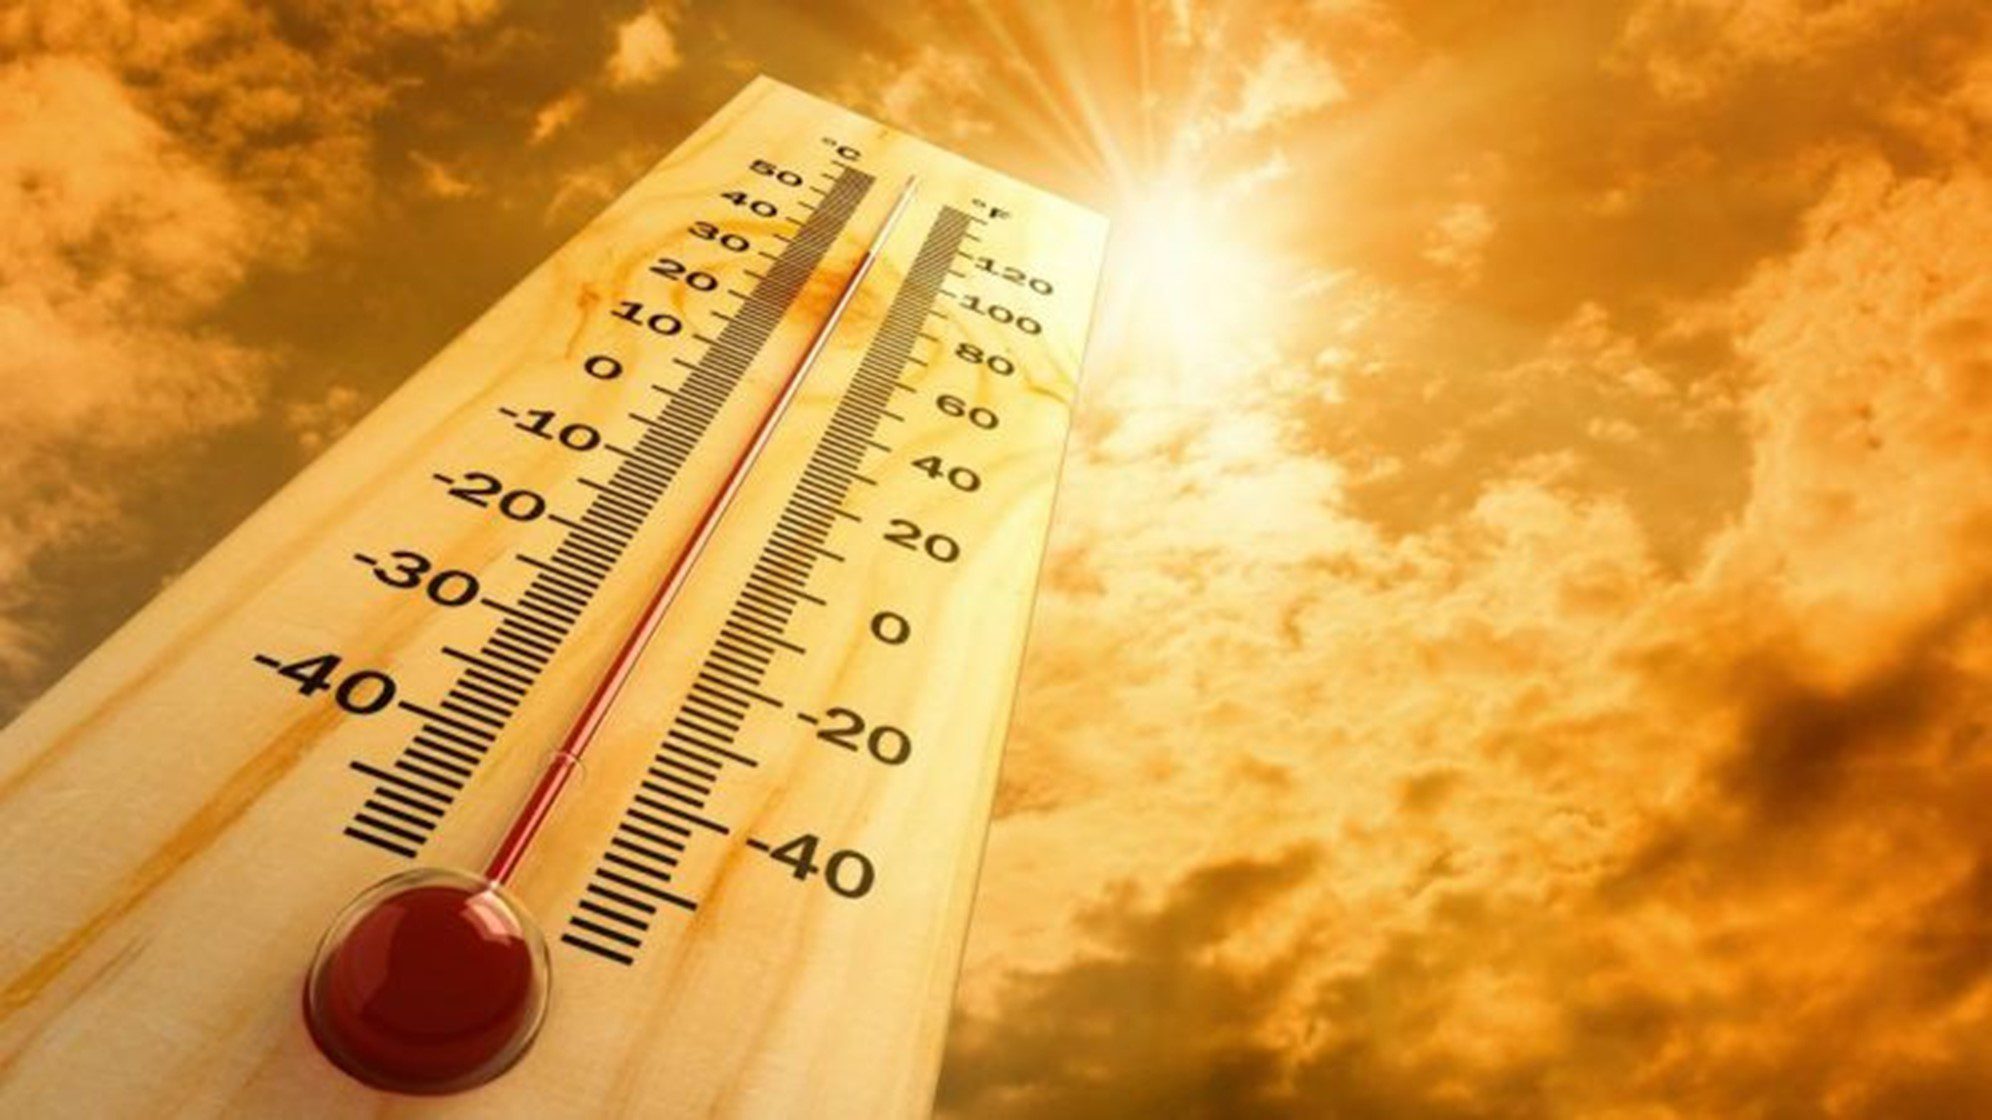   Heat Alert – Überwachung des Stadtklimas bei fortschreitendem Klimawandel